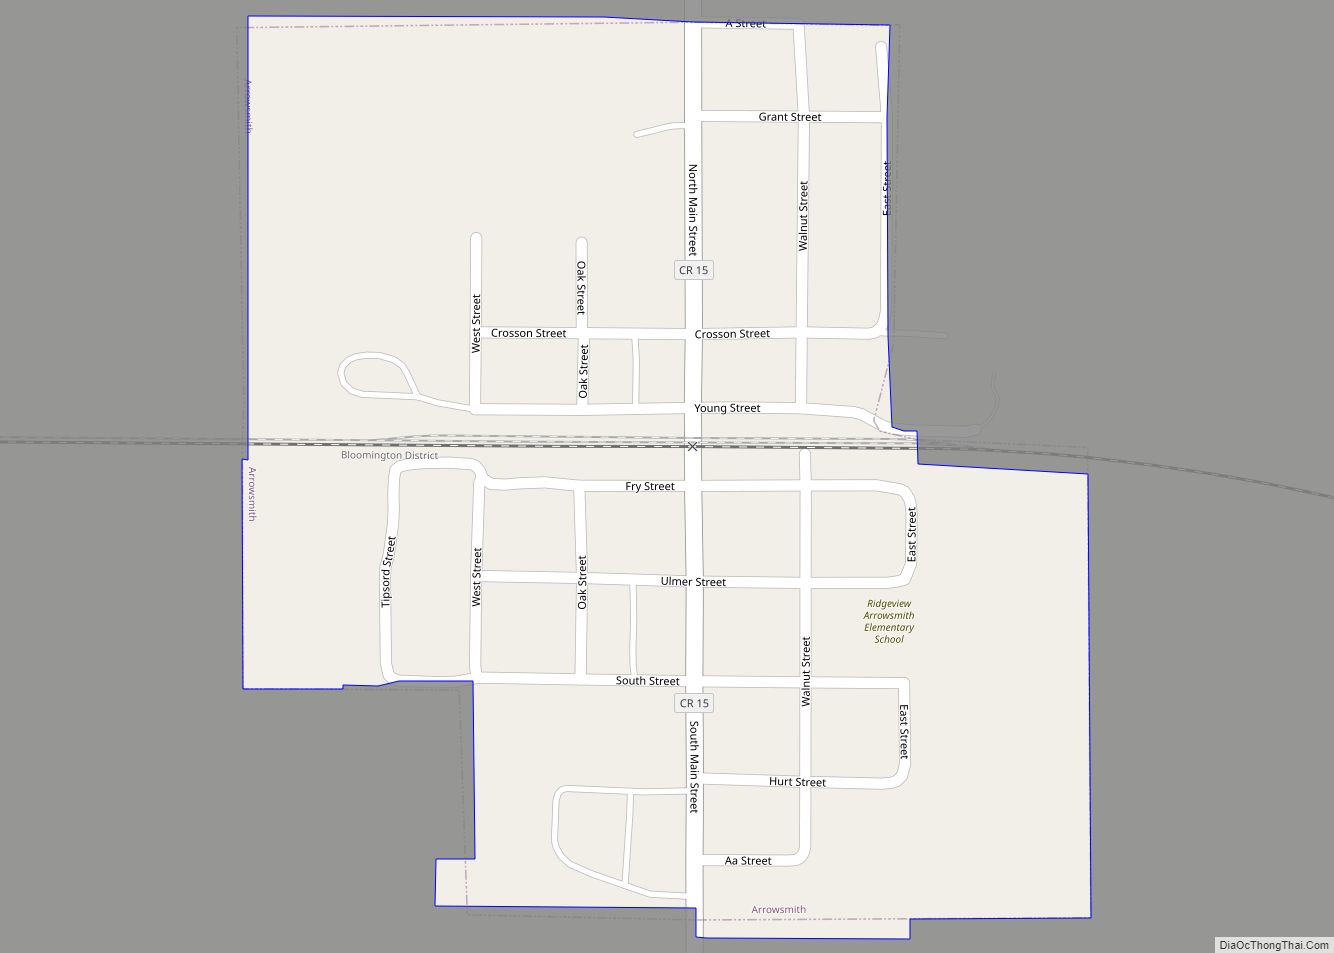 Map of Arrowsmith village